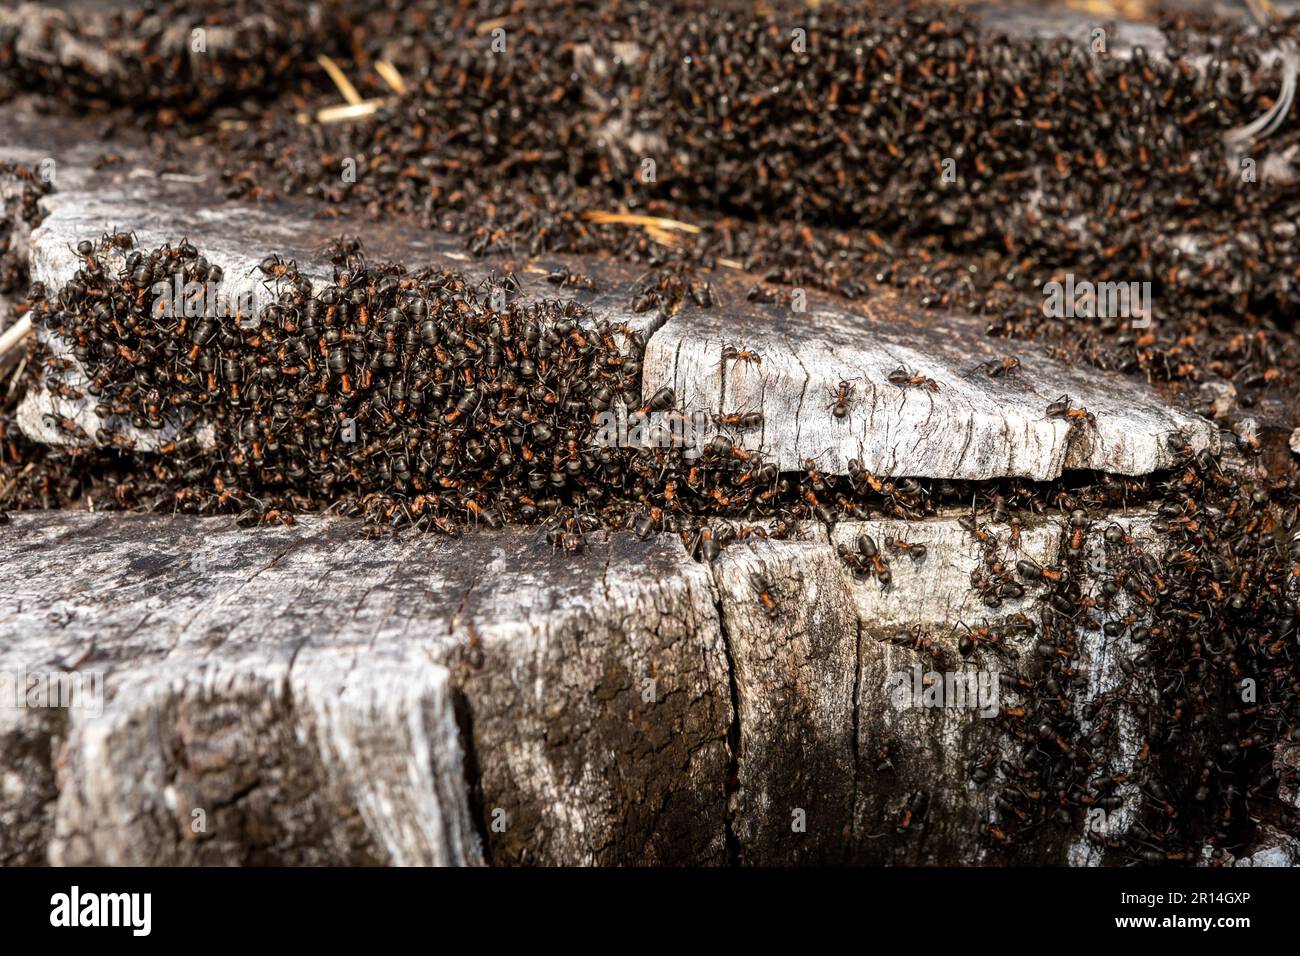 Wilde Ameisen nisten im alten Baumstamm im Wald. Stockfoto